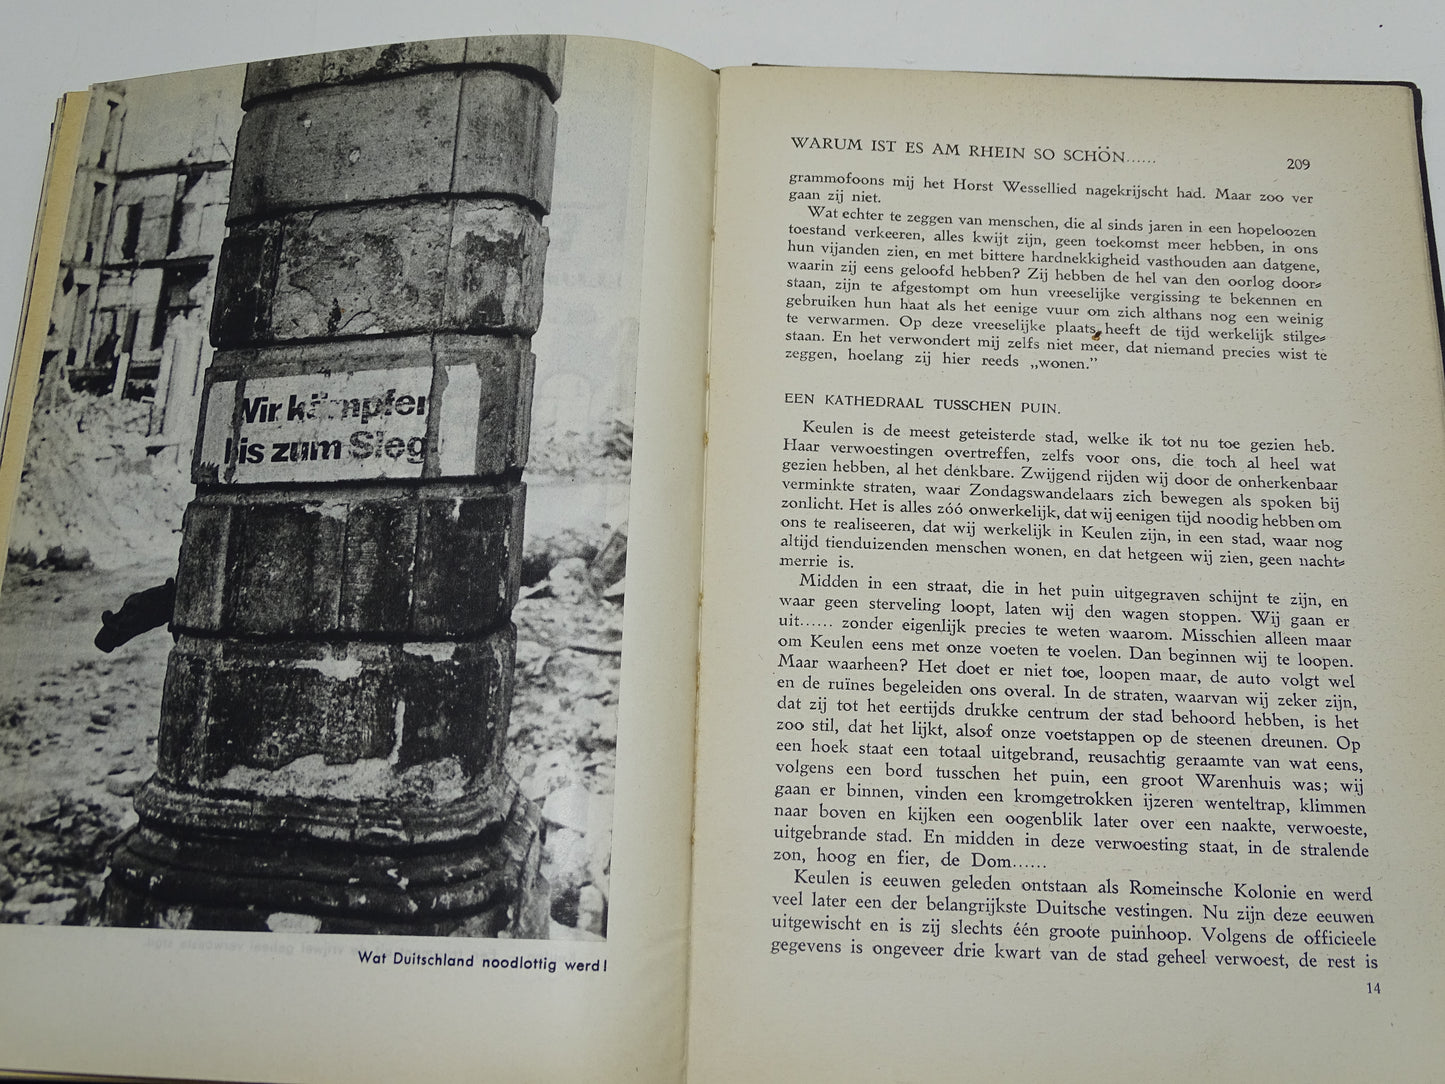 Boek: Zoo Leeft Duitschland, Op De Puinhopen Van Het Derde Rijk, 1947